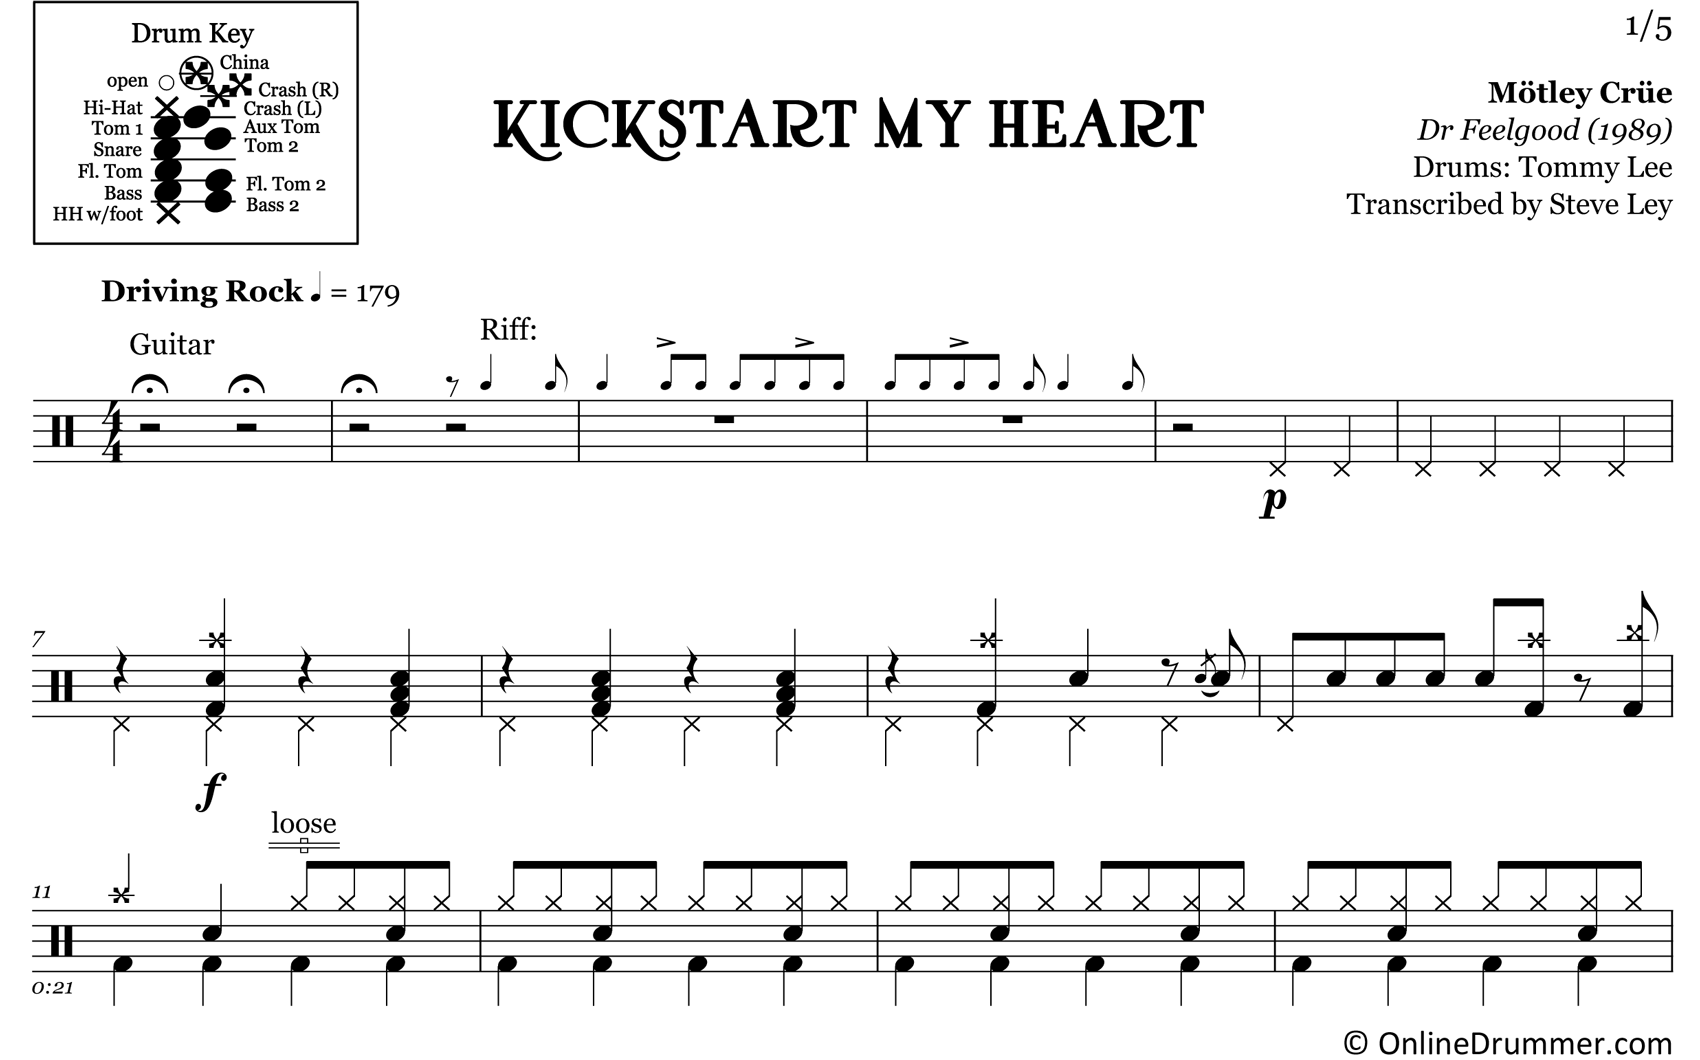 Kickstart My Heart - Motley Crue - Drum Sheet Music